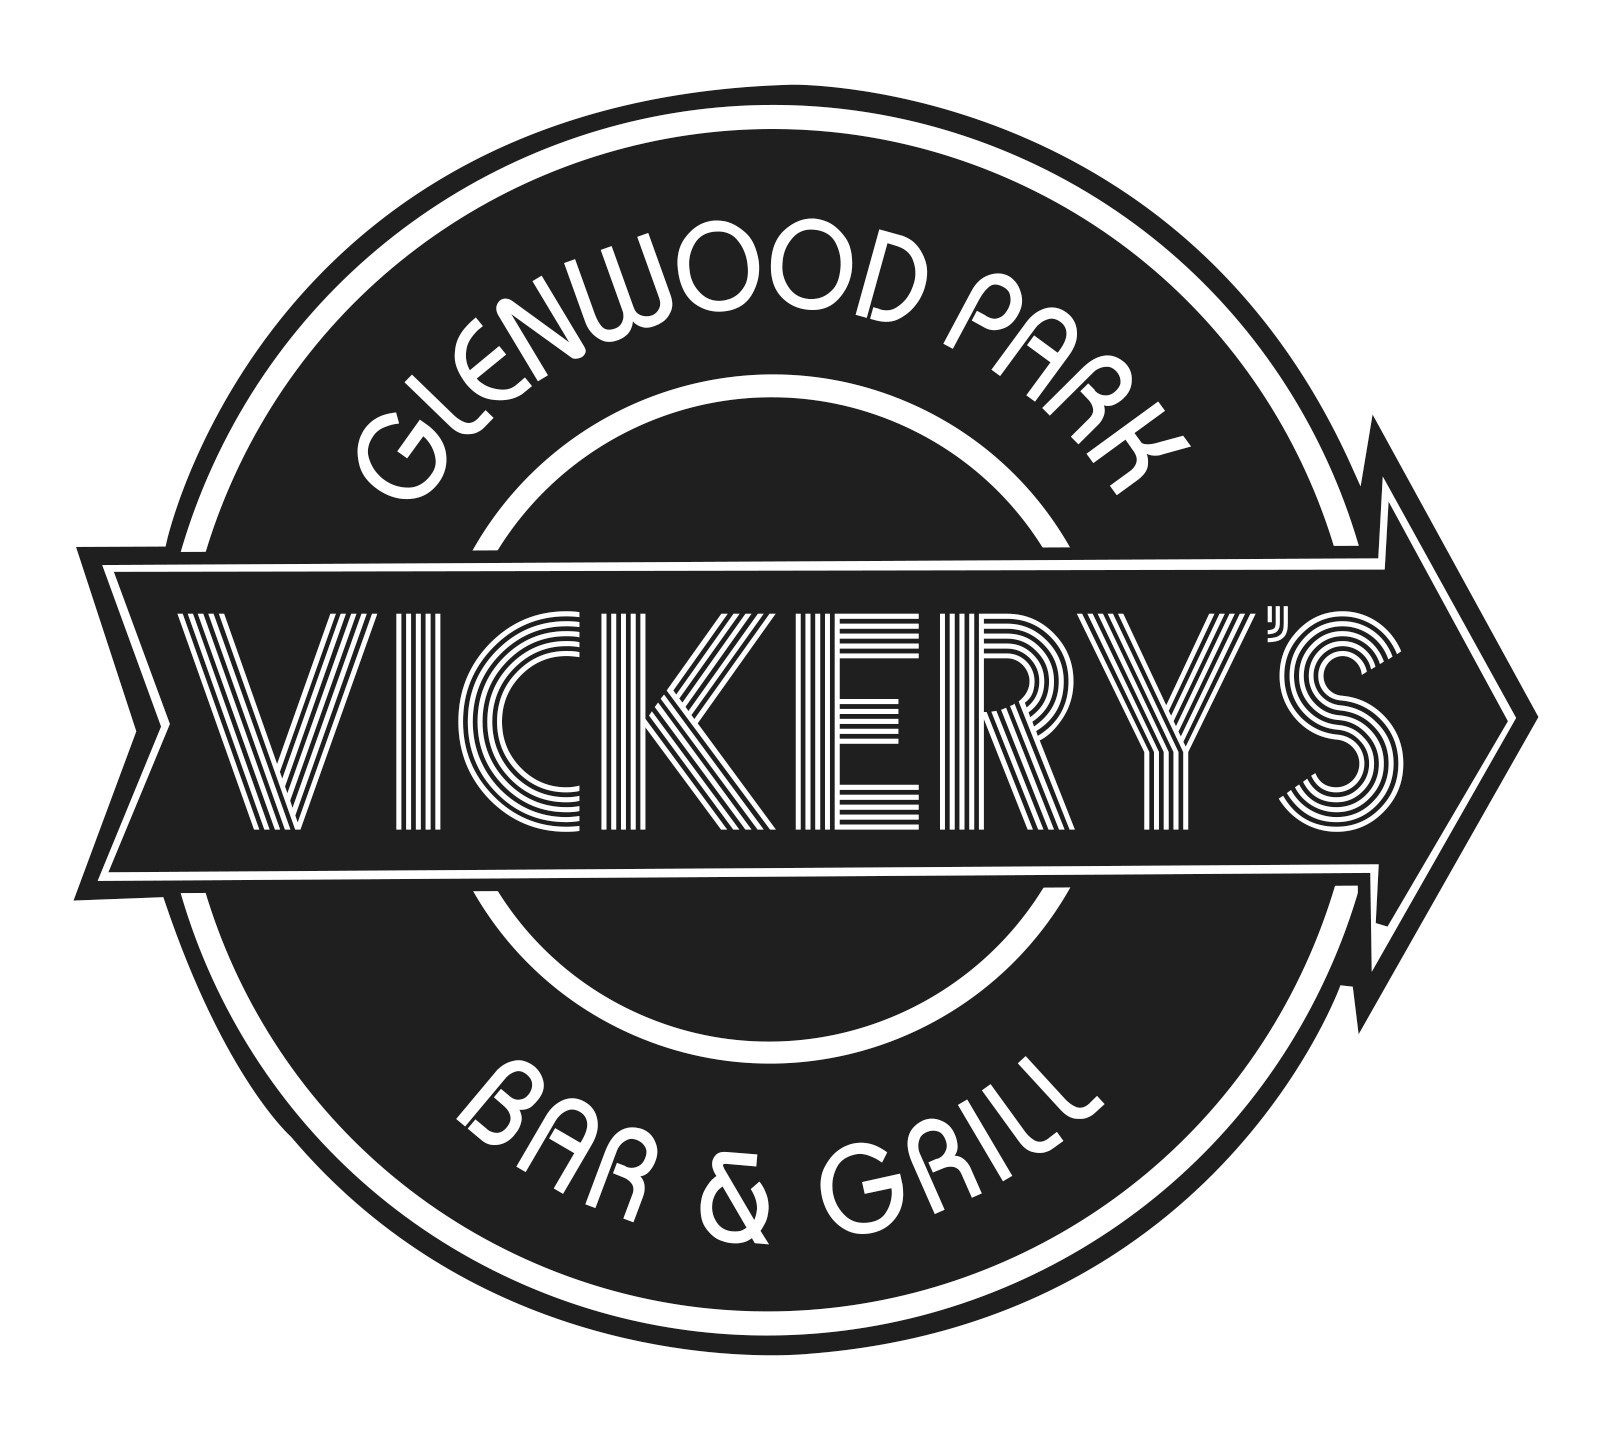 Vickerys Bar & Grill